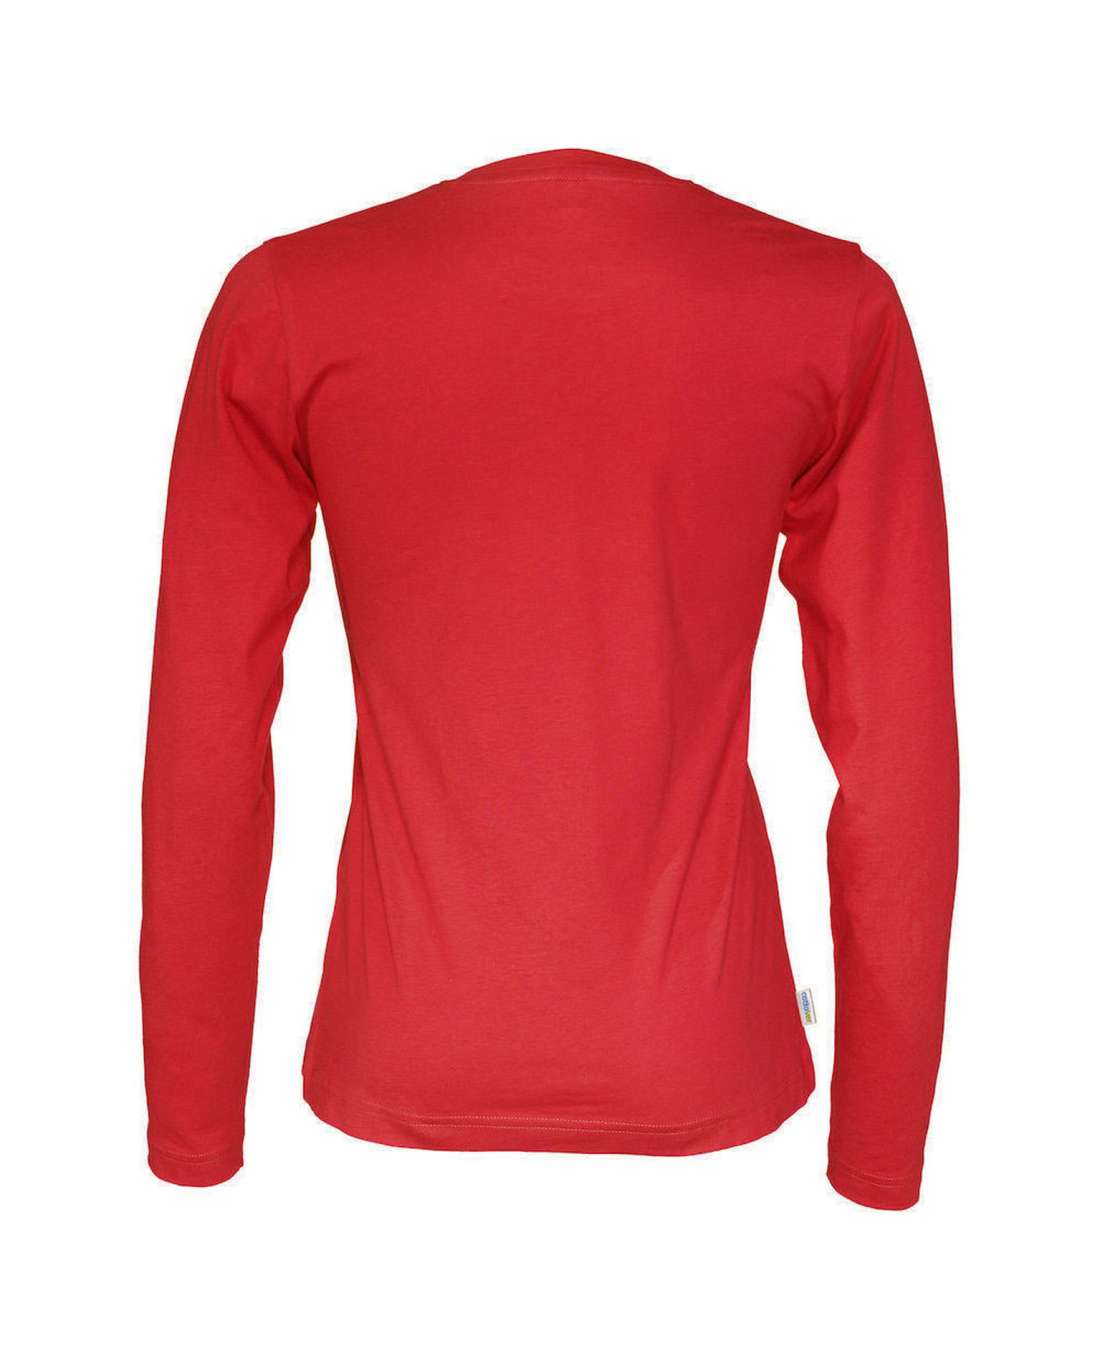 Cottover Naisten pitkähihainen T-paita, Punainen